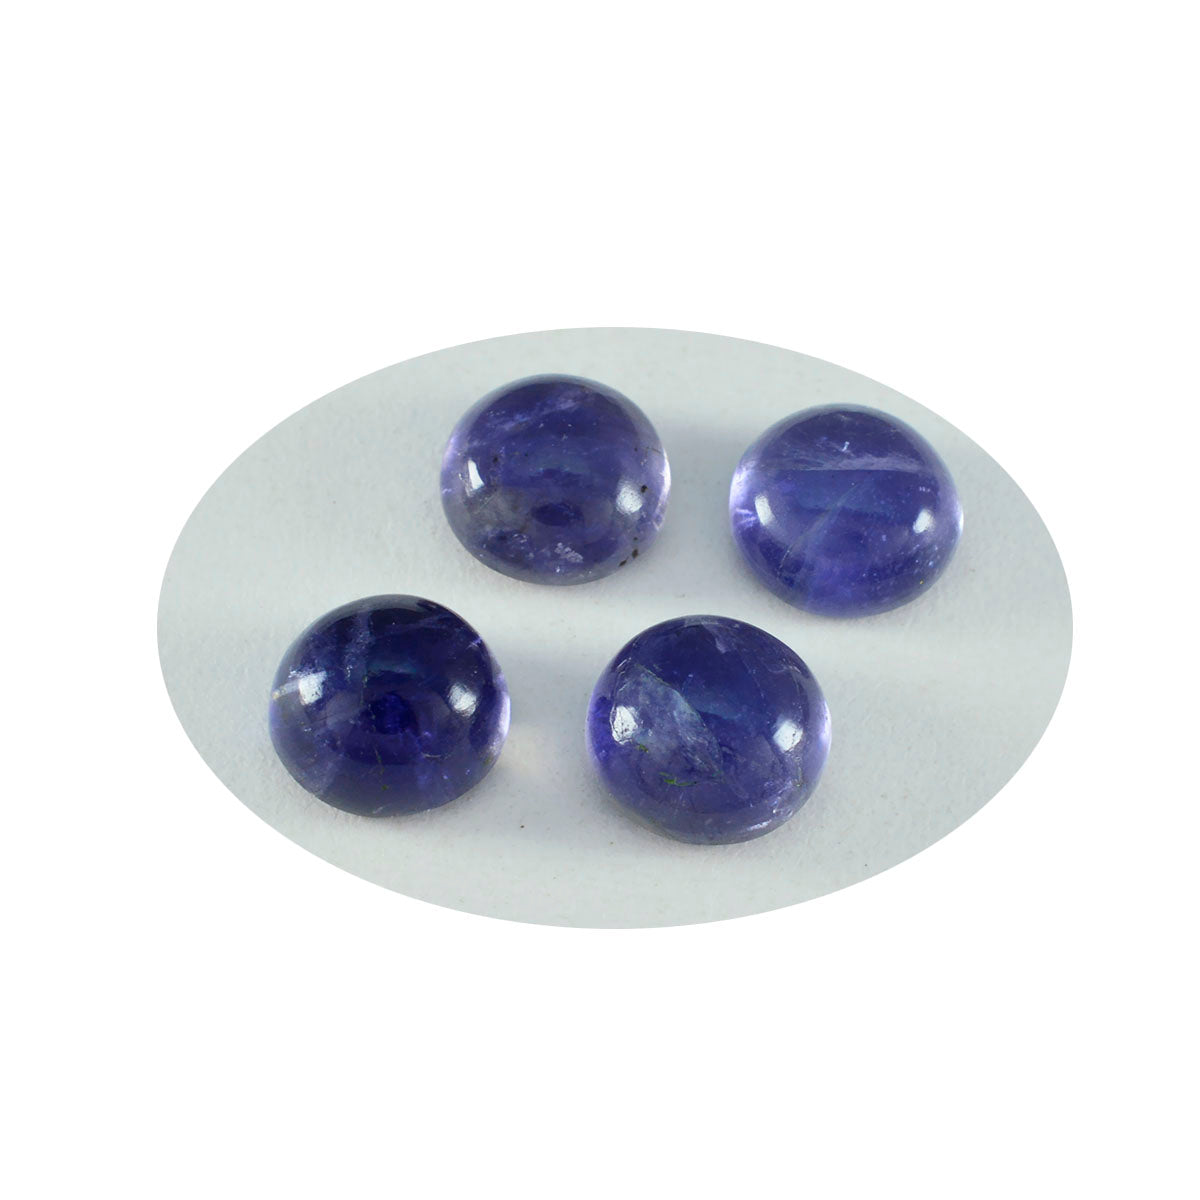 Riyogems 1 Stück blauer Iolith-Cabochon, 13 x 13 mm, runde Form, attraktiver Qualitätsstein